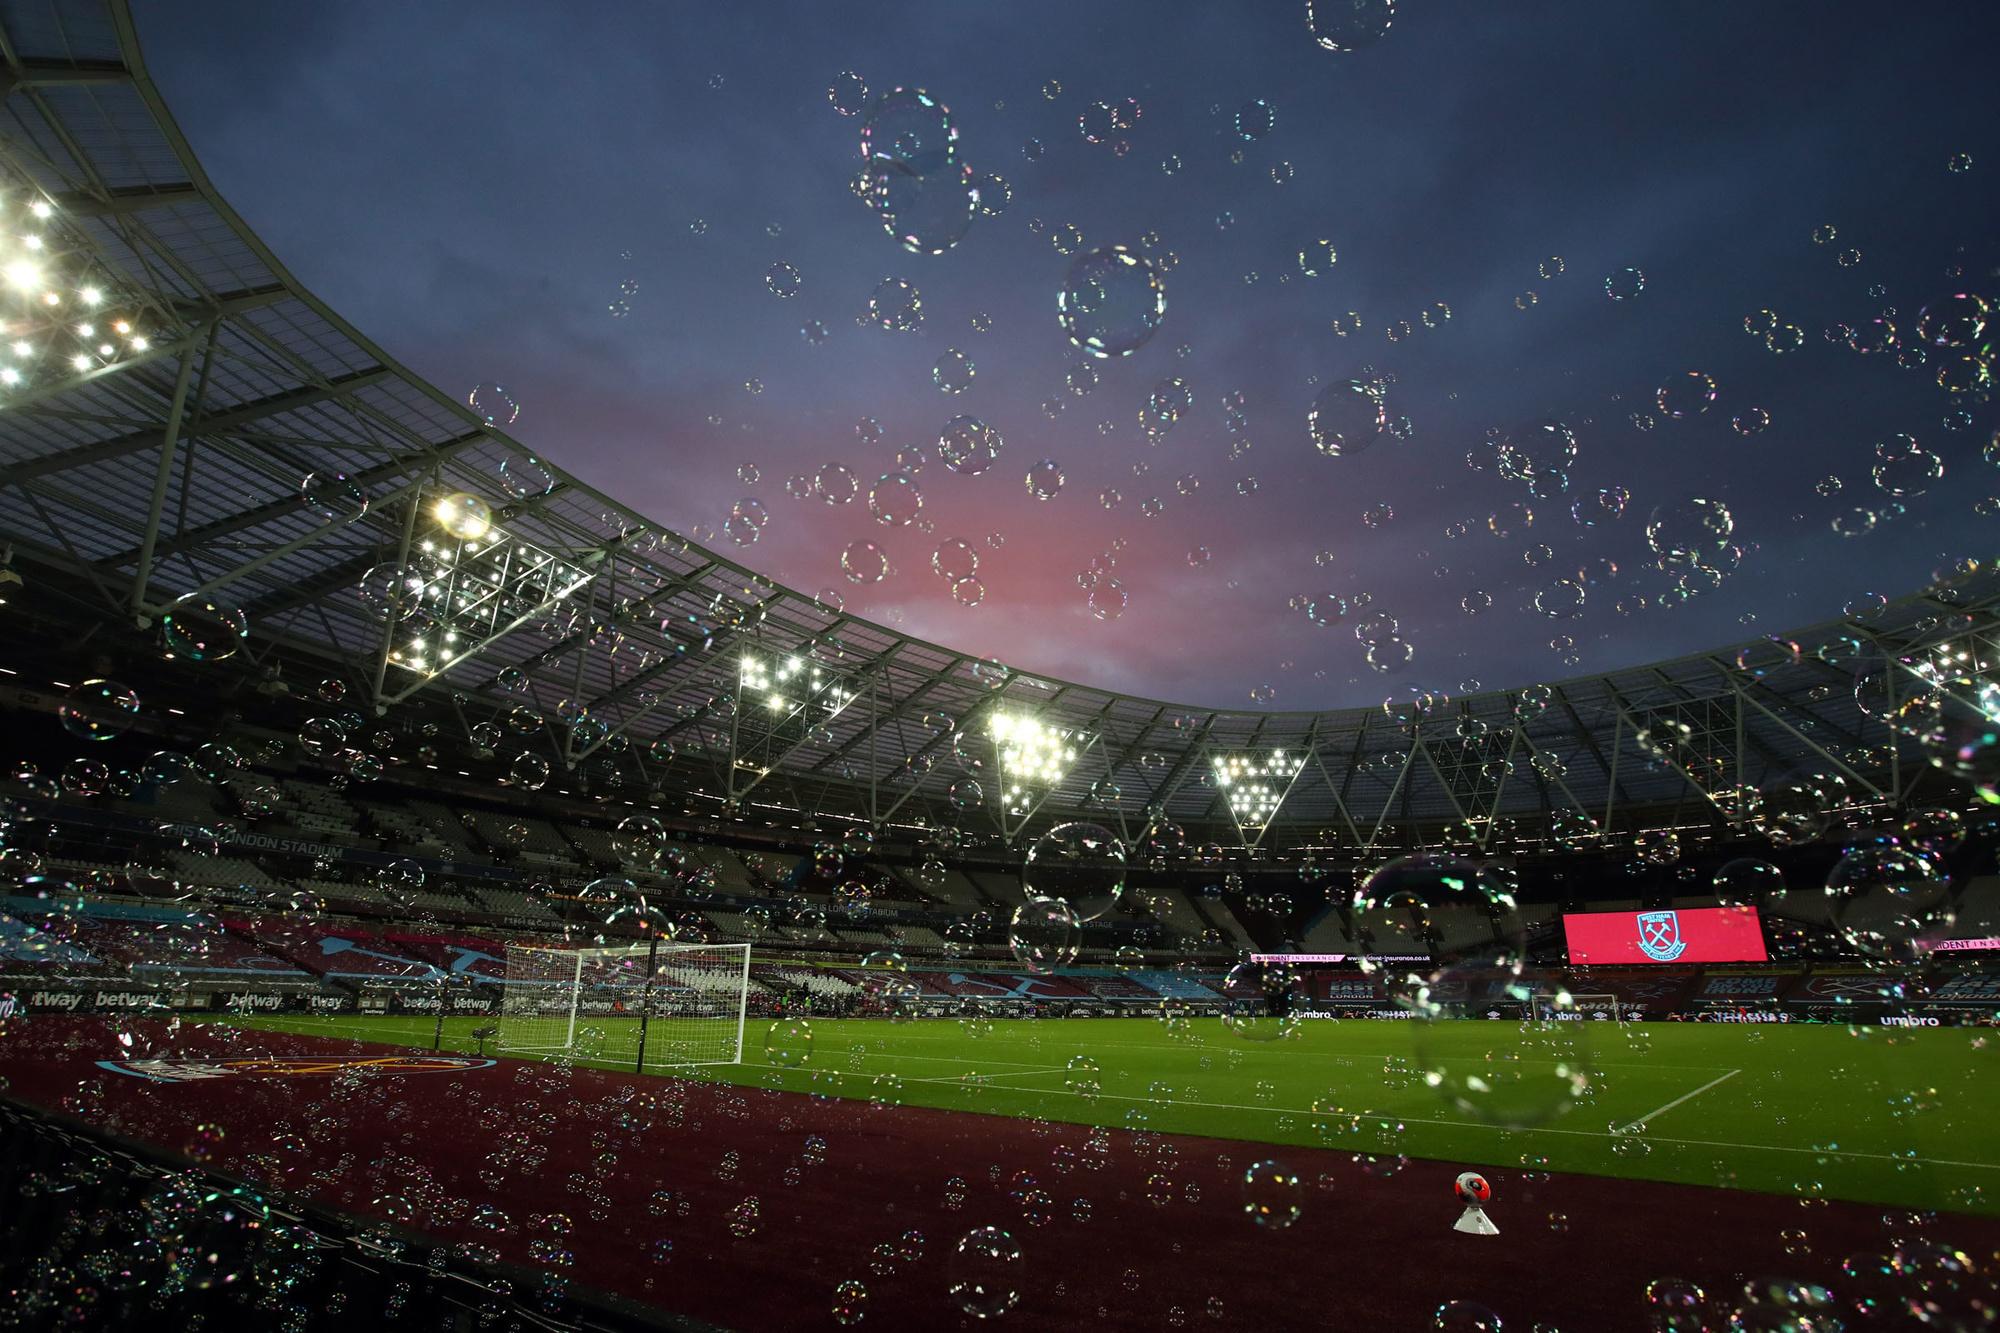 Voor de aftrap wordt het stadion van West Ham altijd gevuld met bubbels